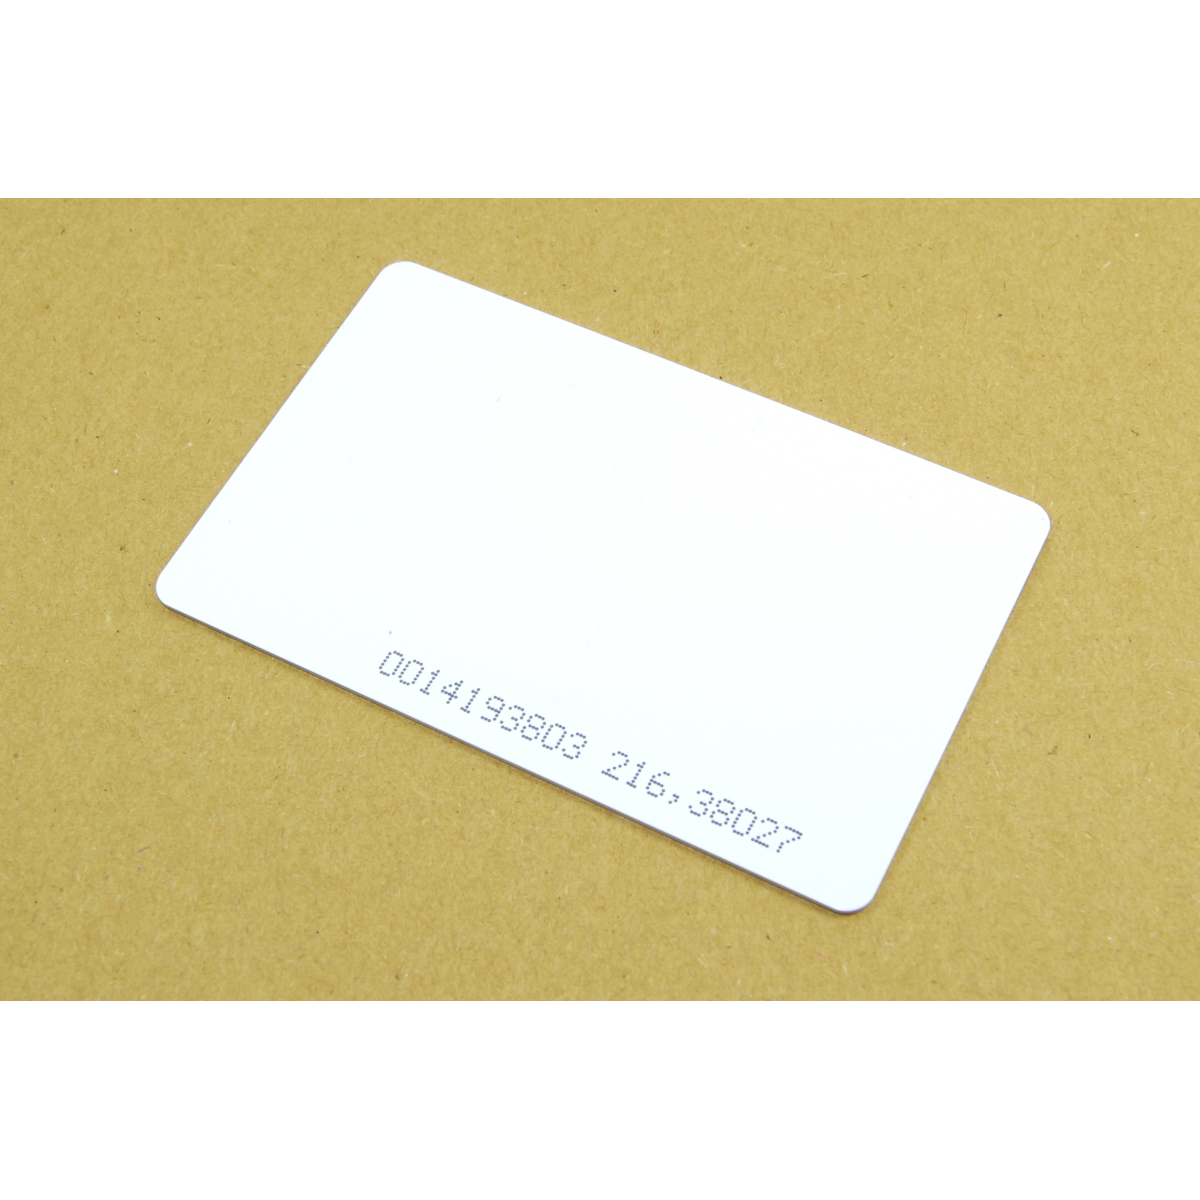 RFID 125kHz Card White Image 1